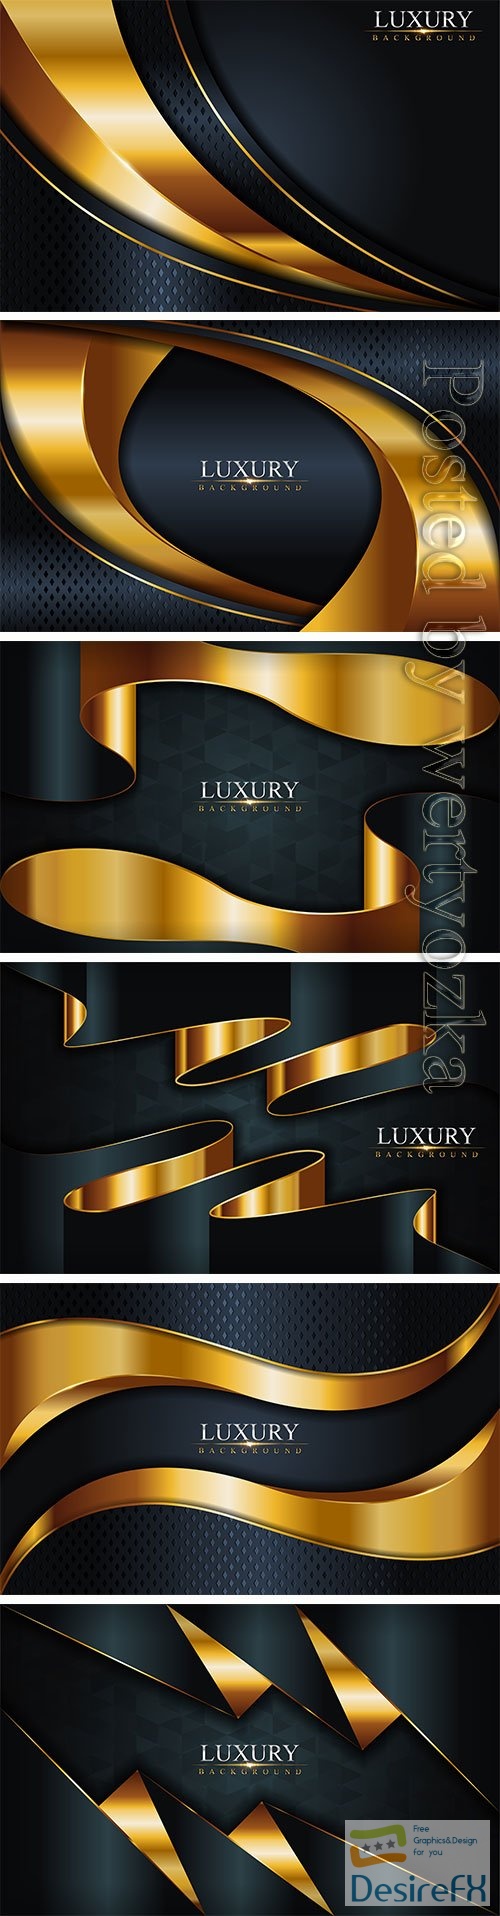 Luxury dark  with golden lines vector background